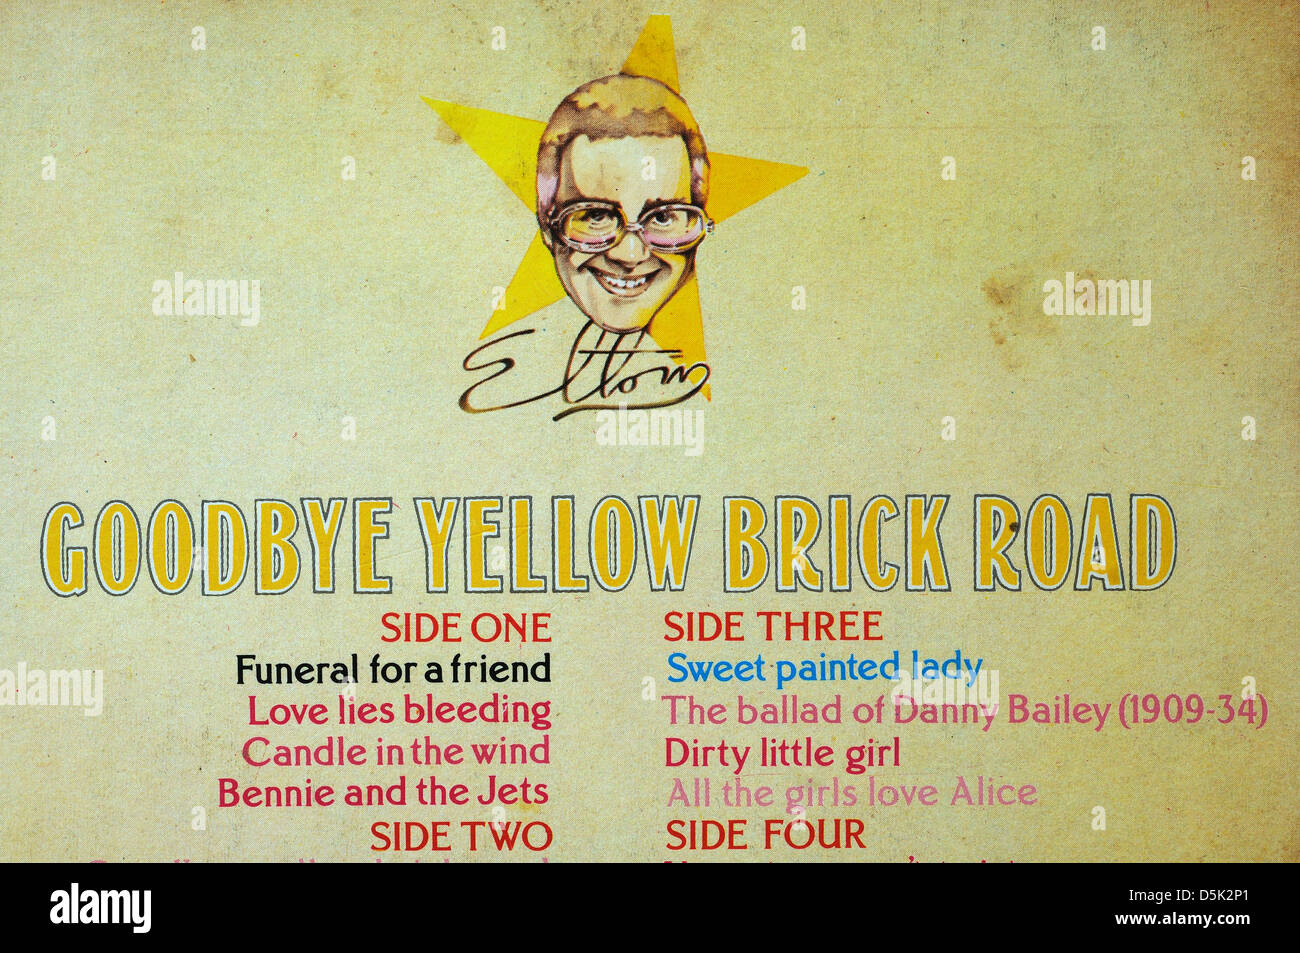 Candela al vento di Elton John sull'Addio mattone giallo album su strada Foto Stock